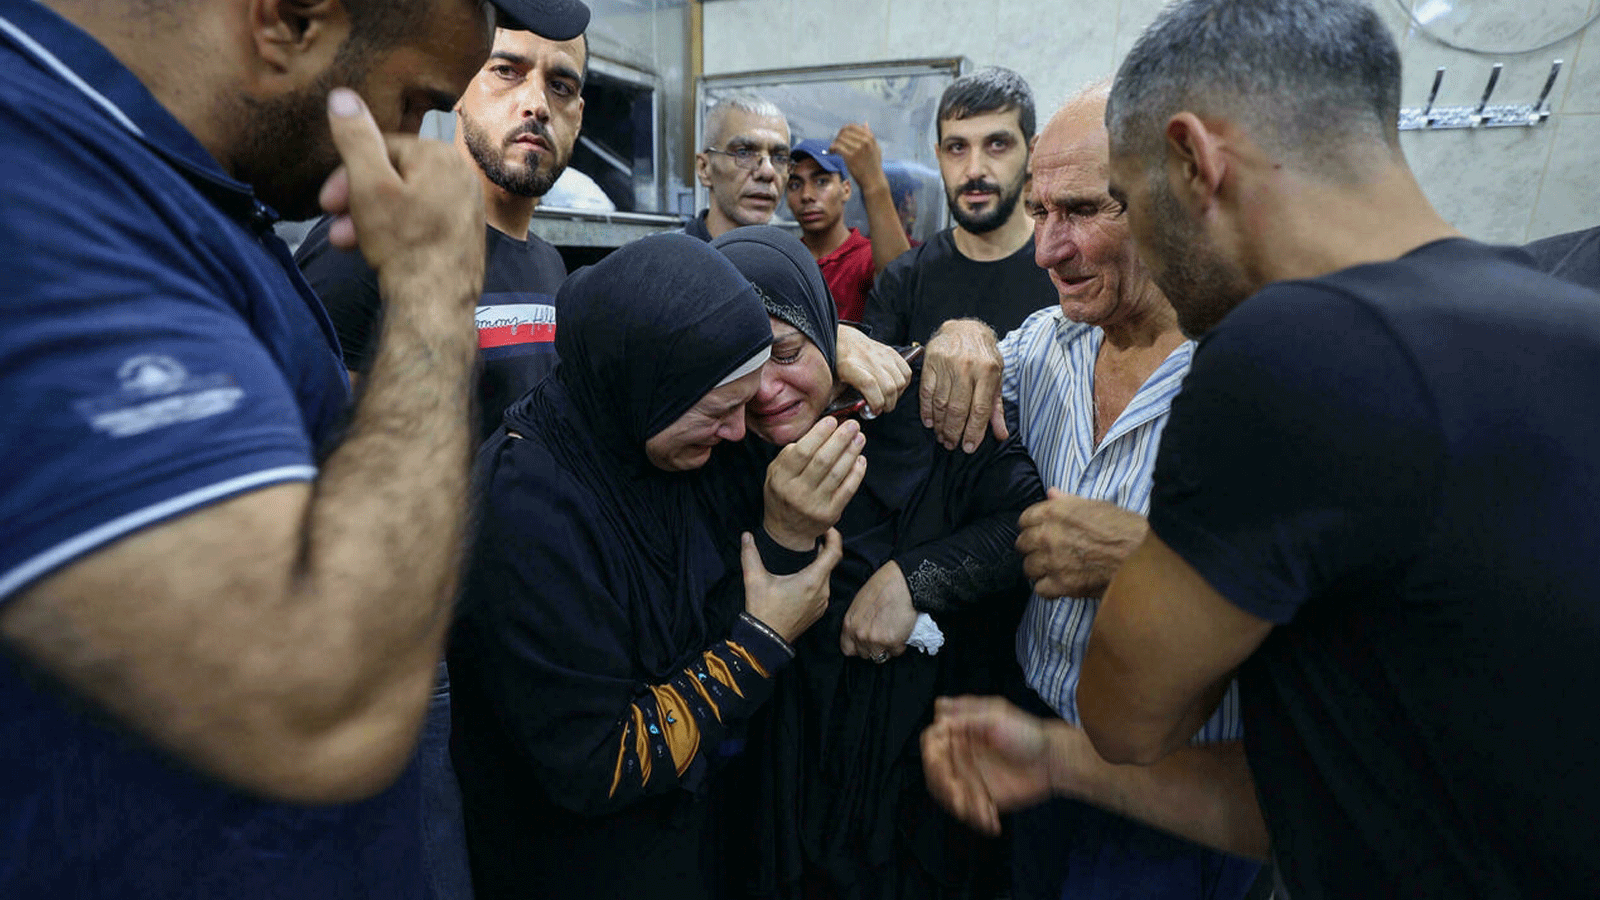 أصدقاء وأقارب يواسون والدة أحد الفلسطينيين الذين قُتلوا في اشتباكات مع القوات الإسرائيلية في مخيم جنين للاجئين شمال الضفة الغربية المحتلة، في مشرحة مستشفى جنين. بتاريخ 16 آب/ أغسطس 2021